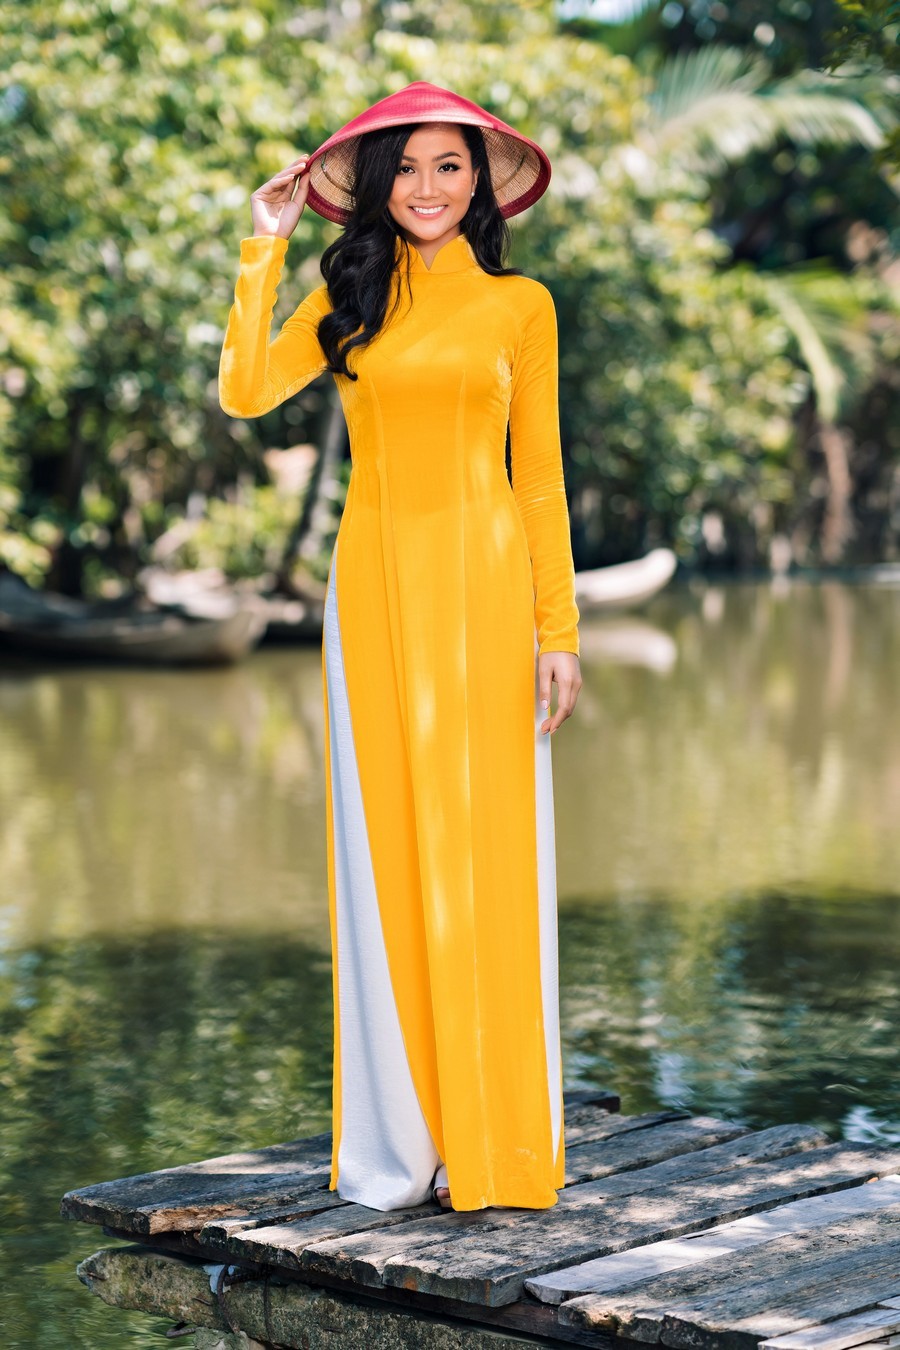  
Dù trong những thiết kế xẻ tà hay kín đáo với áo dài, H'Hen Niê đều thể hiện trọn vẹn nét đẹp người phụ nữ Việt.  